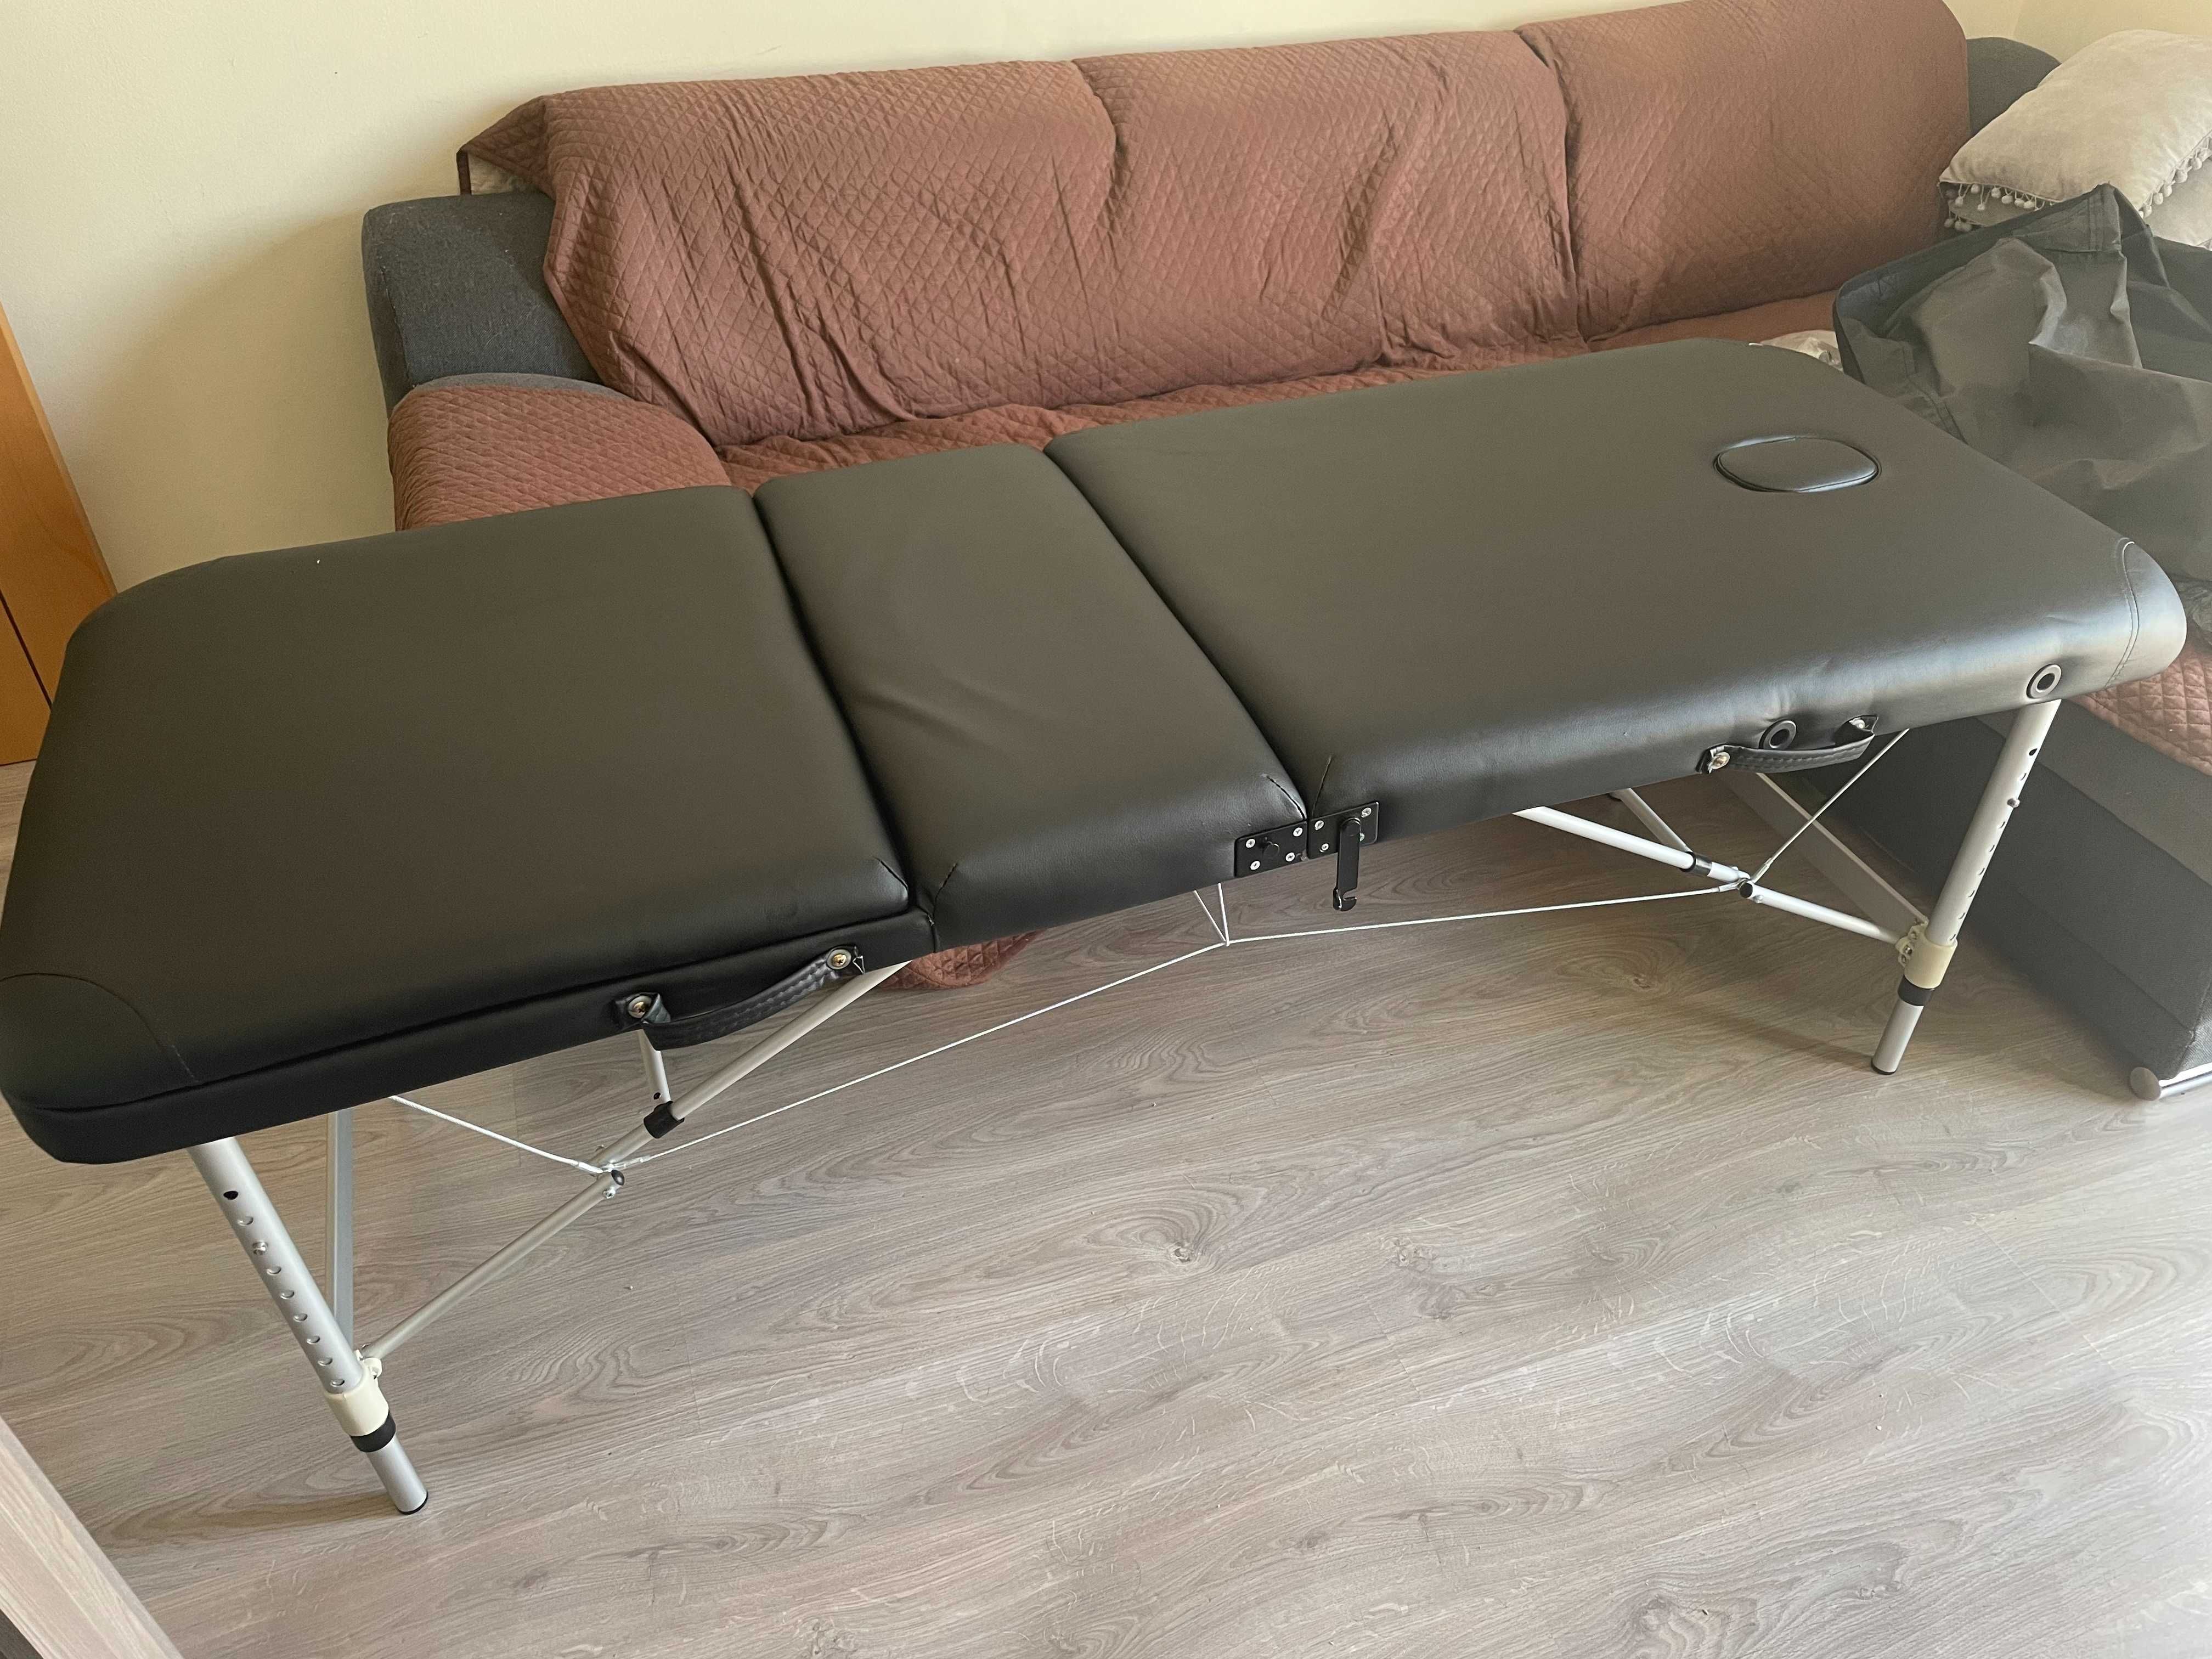 Mesa de massagem completa / PRO massage table / массажный стол ПРО